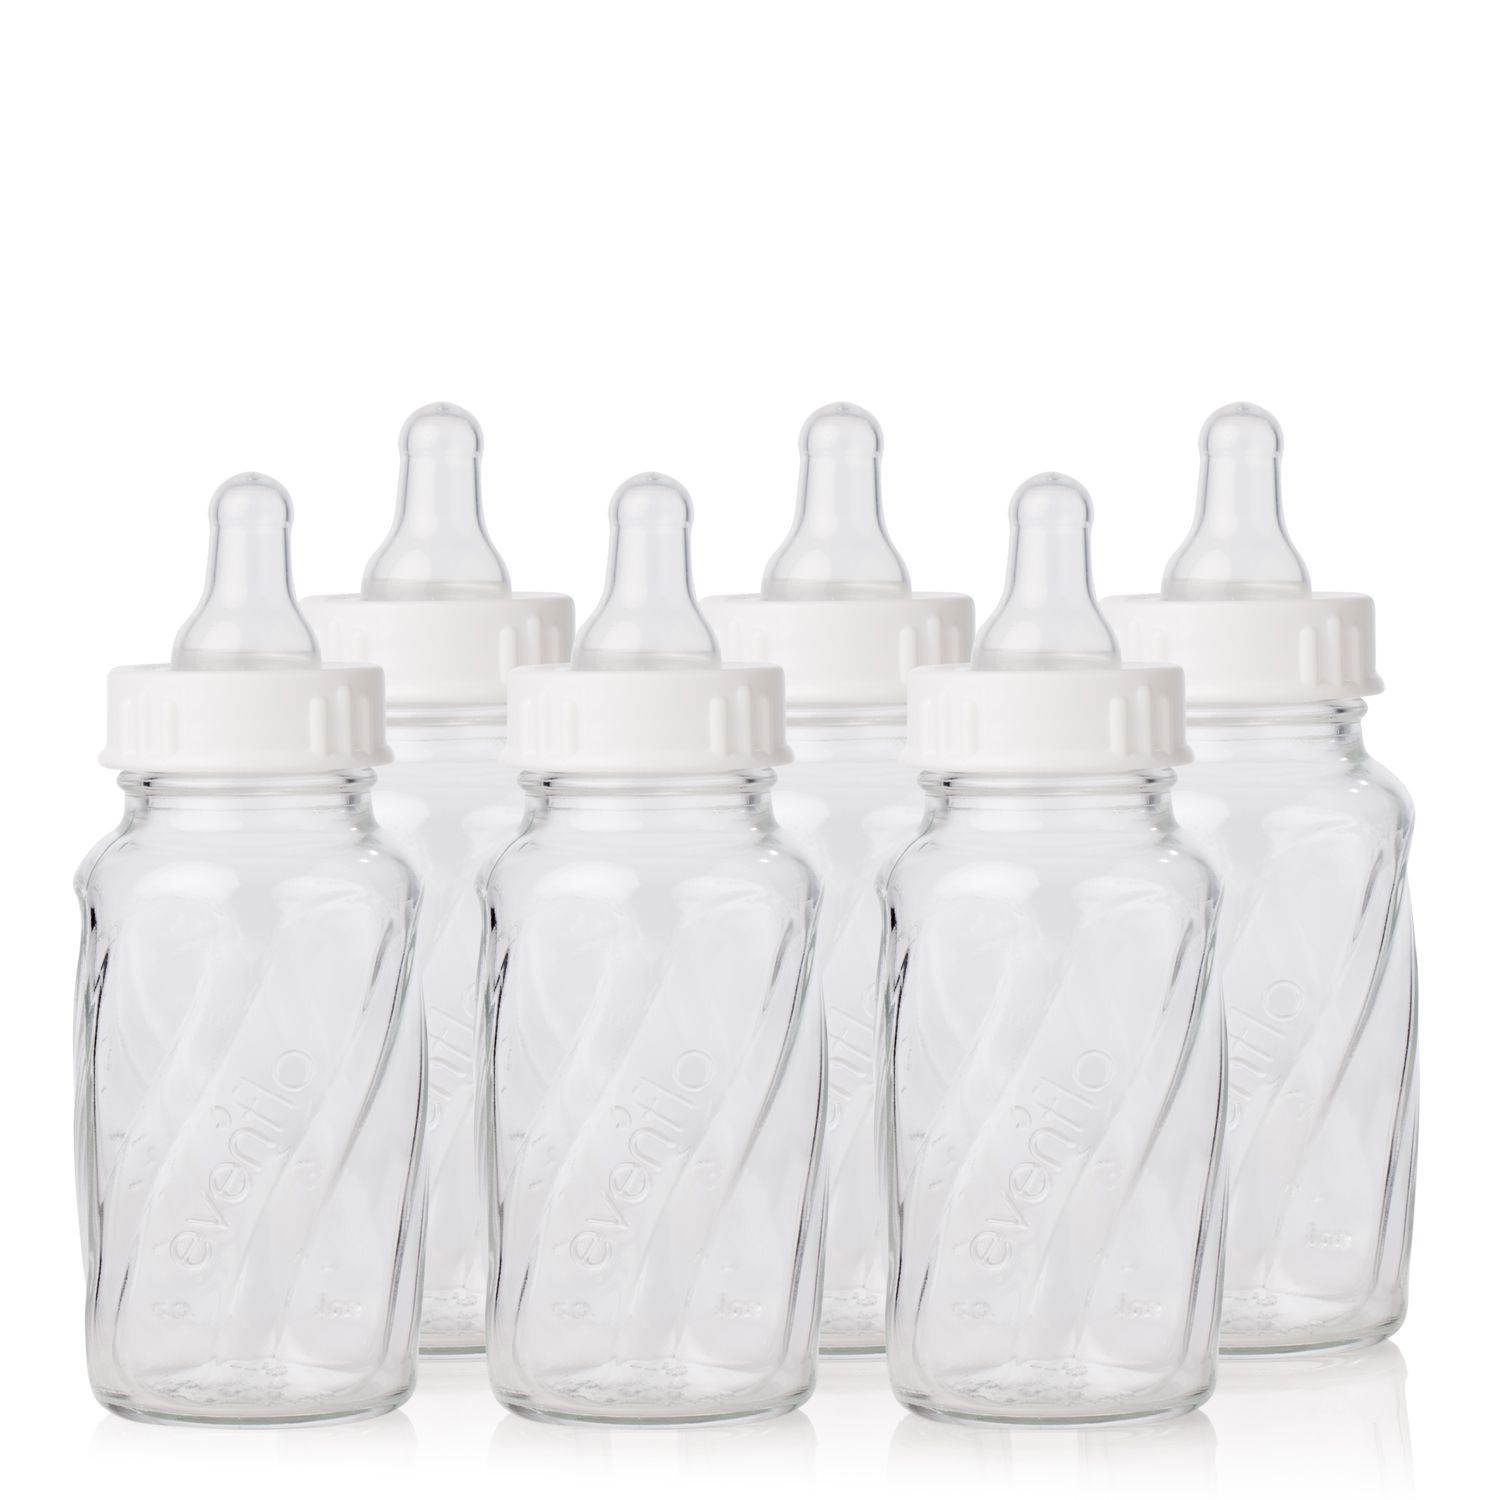 evenflo glass baby bottles